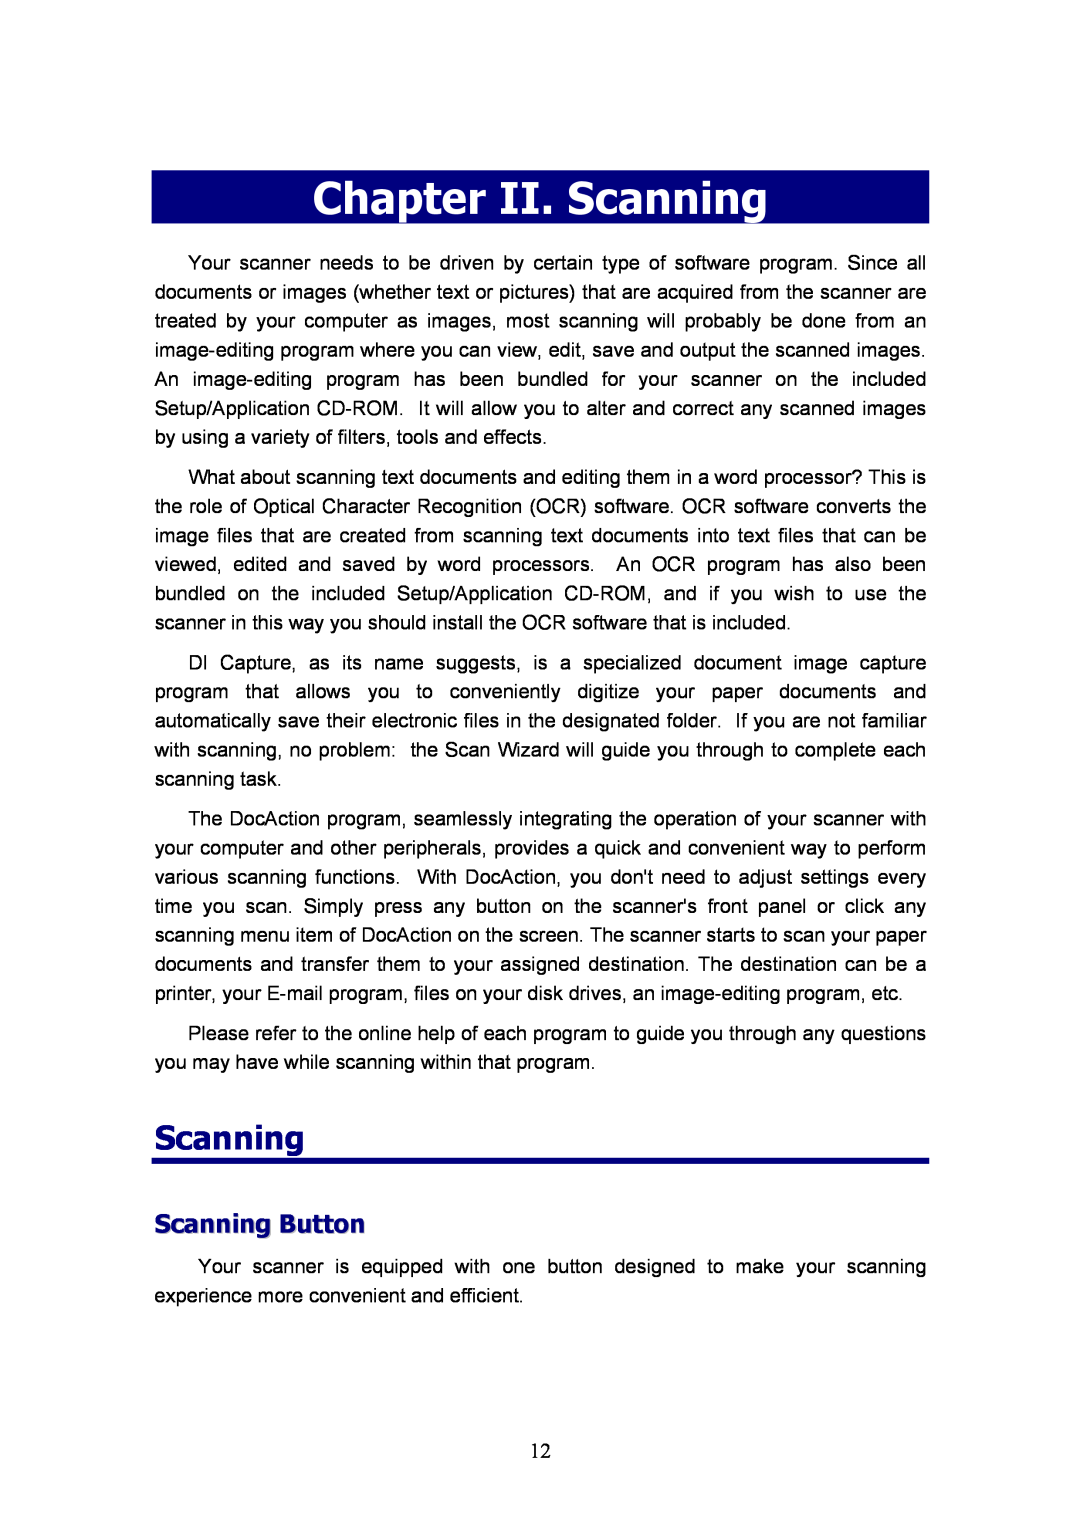 Plustek D600, MobileOffice Scanner manual Chapter II. Scanning, Scanning Button 